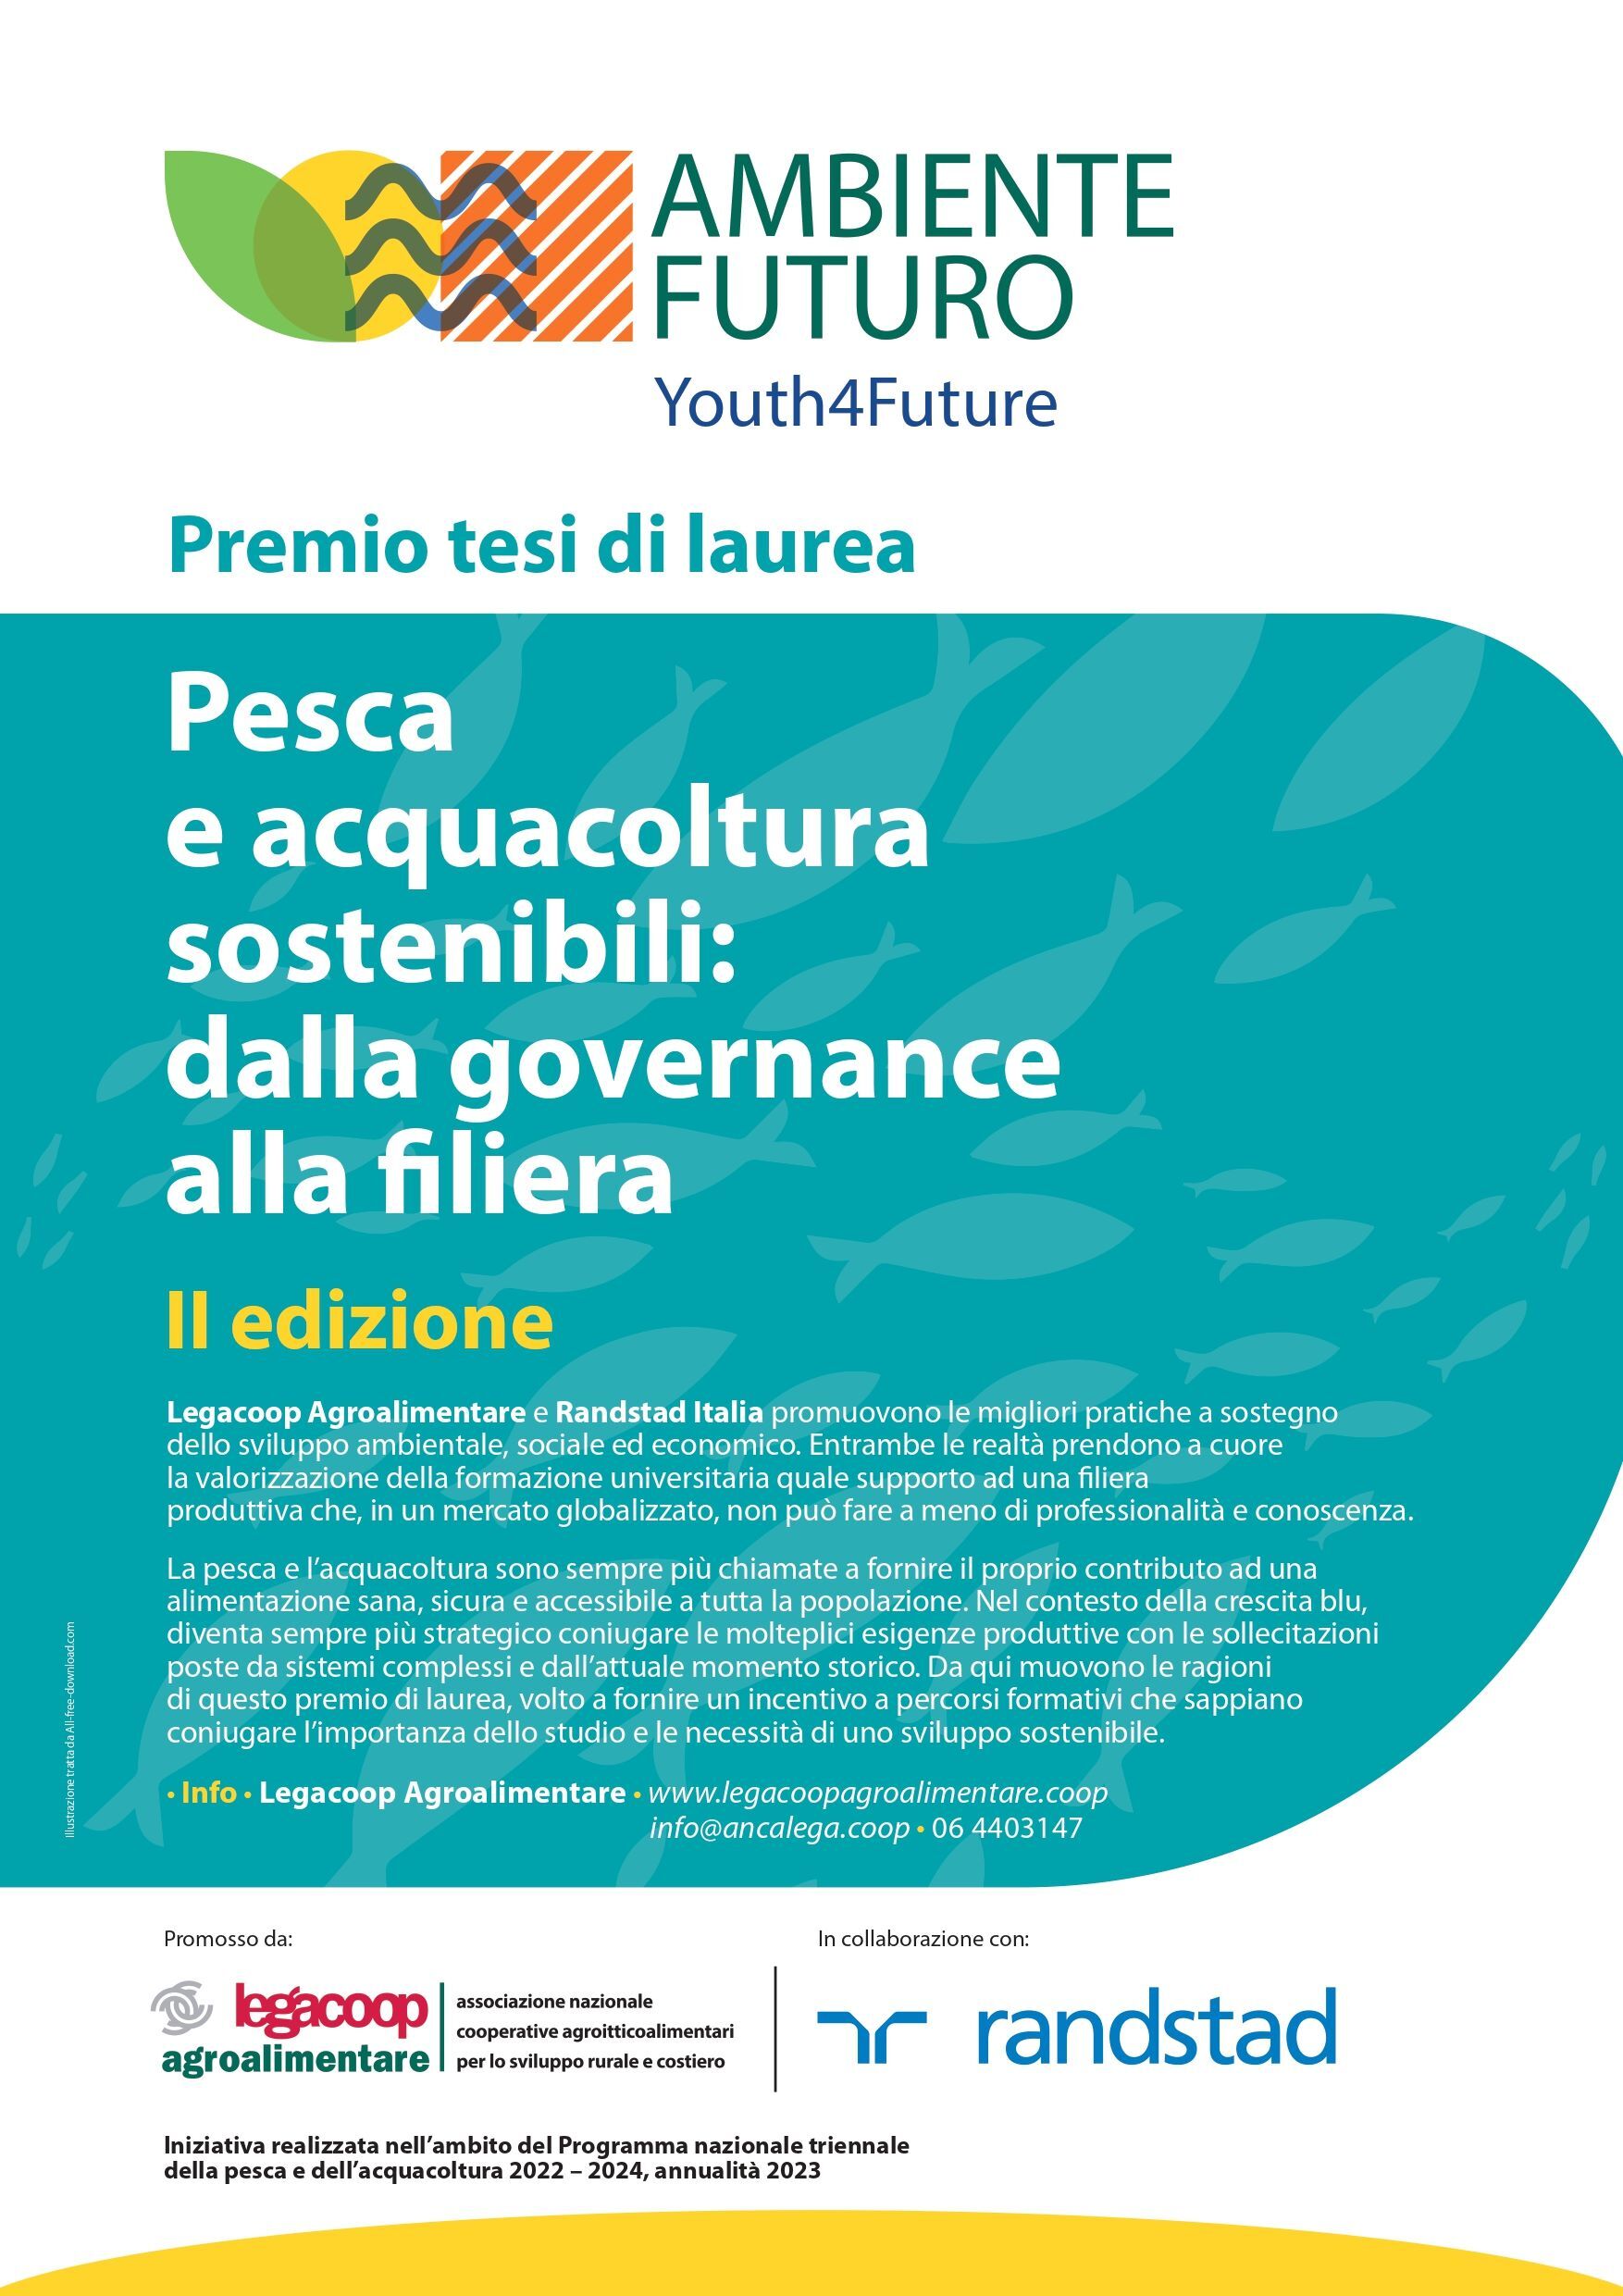 Friuli Venezia Giulia: Legacoop, il modello cooperativo italiano delle filiere agroalimentari subito esportabile in Croazia